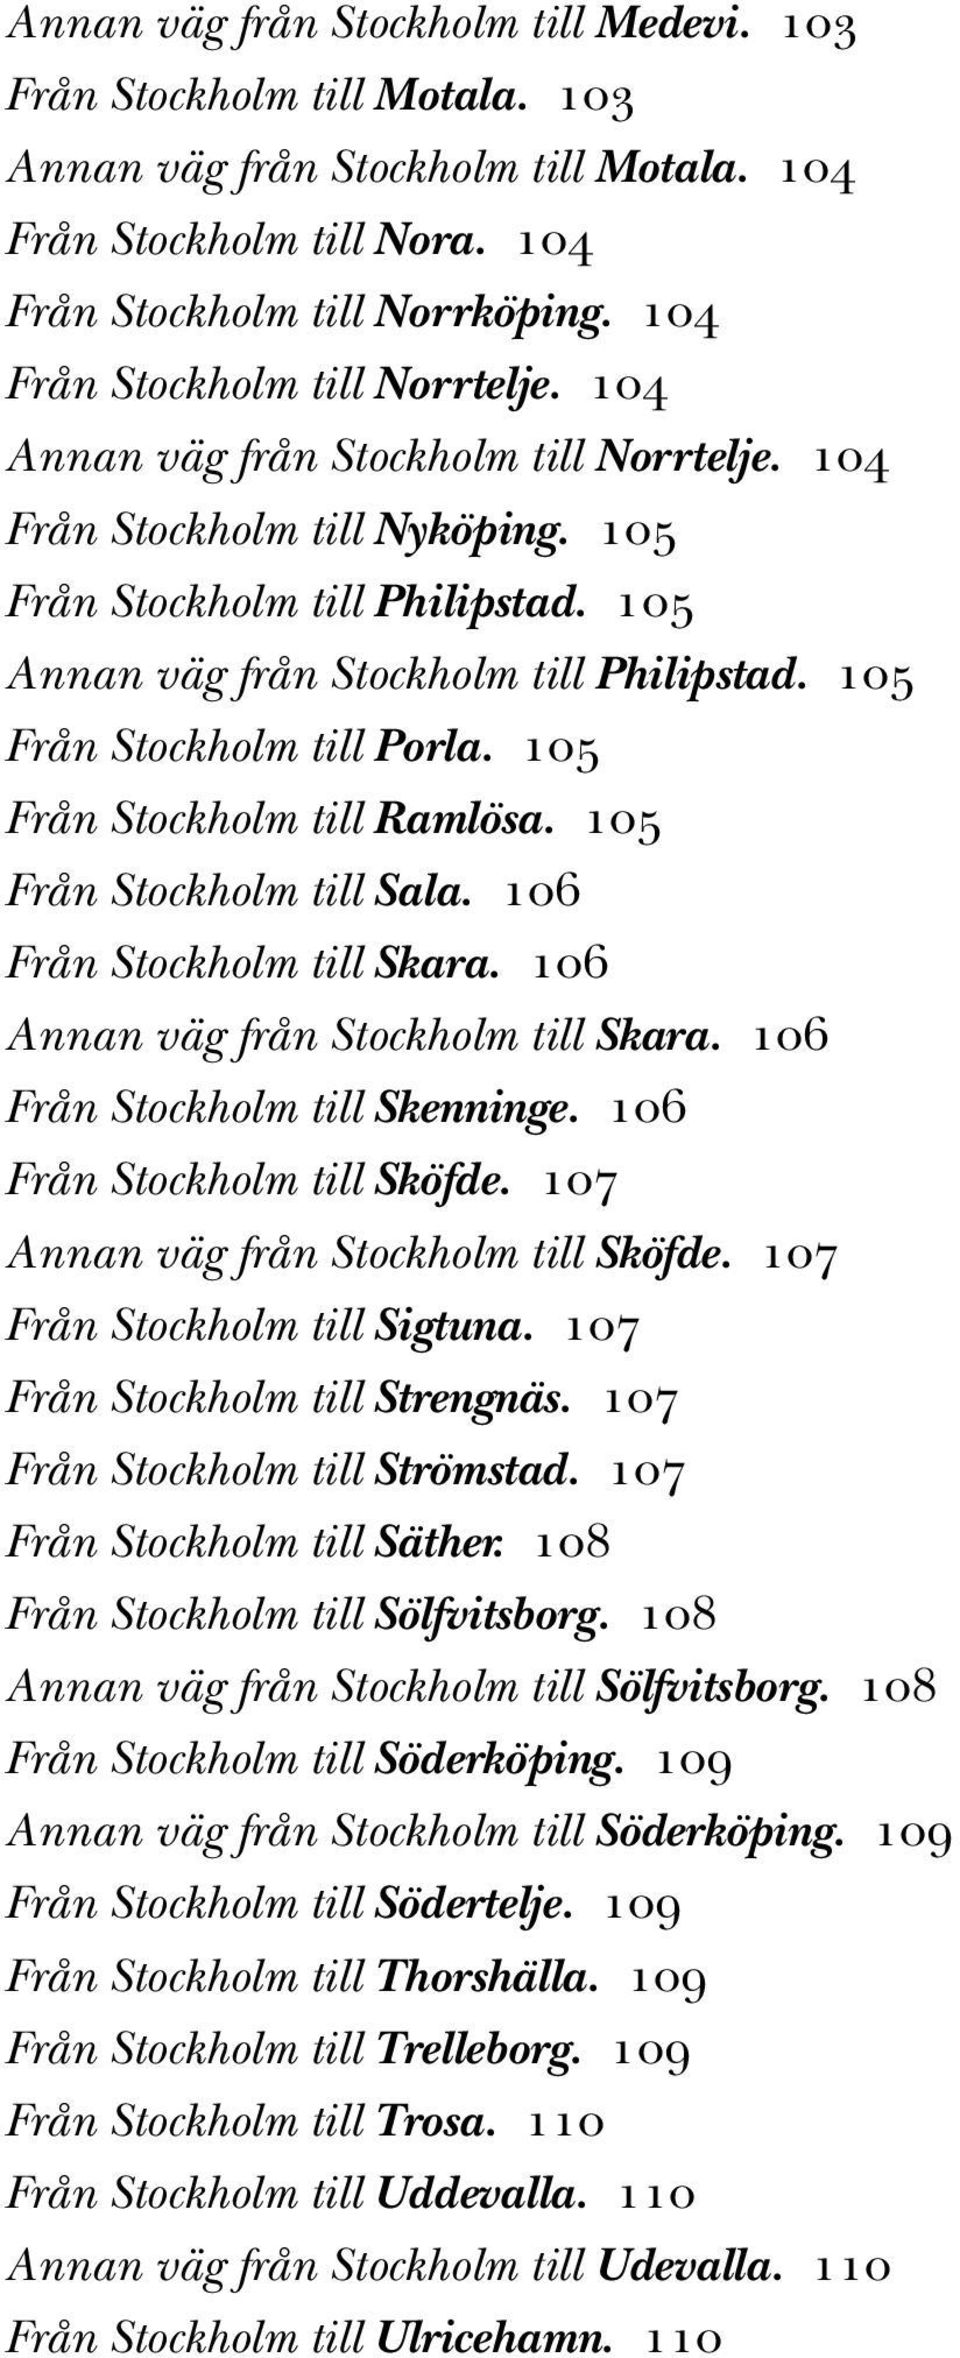 105 Från Stockholm till Porla. 105 Från Stockholm till Ramlösa. 105 Från Stockholm till Sala. 106 Från Stockholm till Skara. 106 Annan väg från Stockholm till Skara. 106 Från Stockholm till Skenninge.